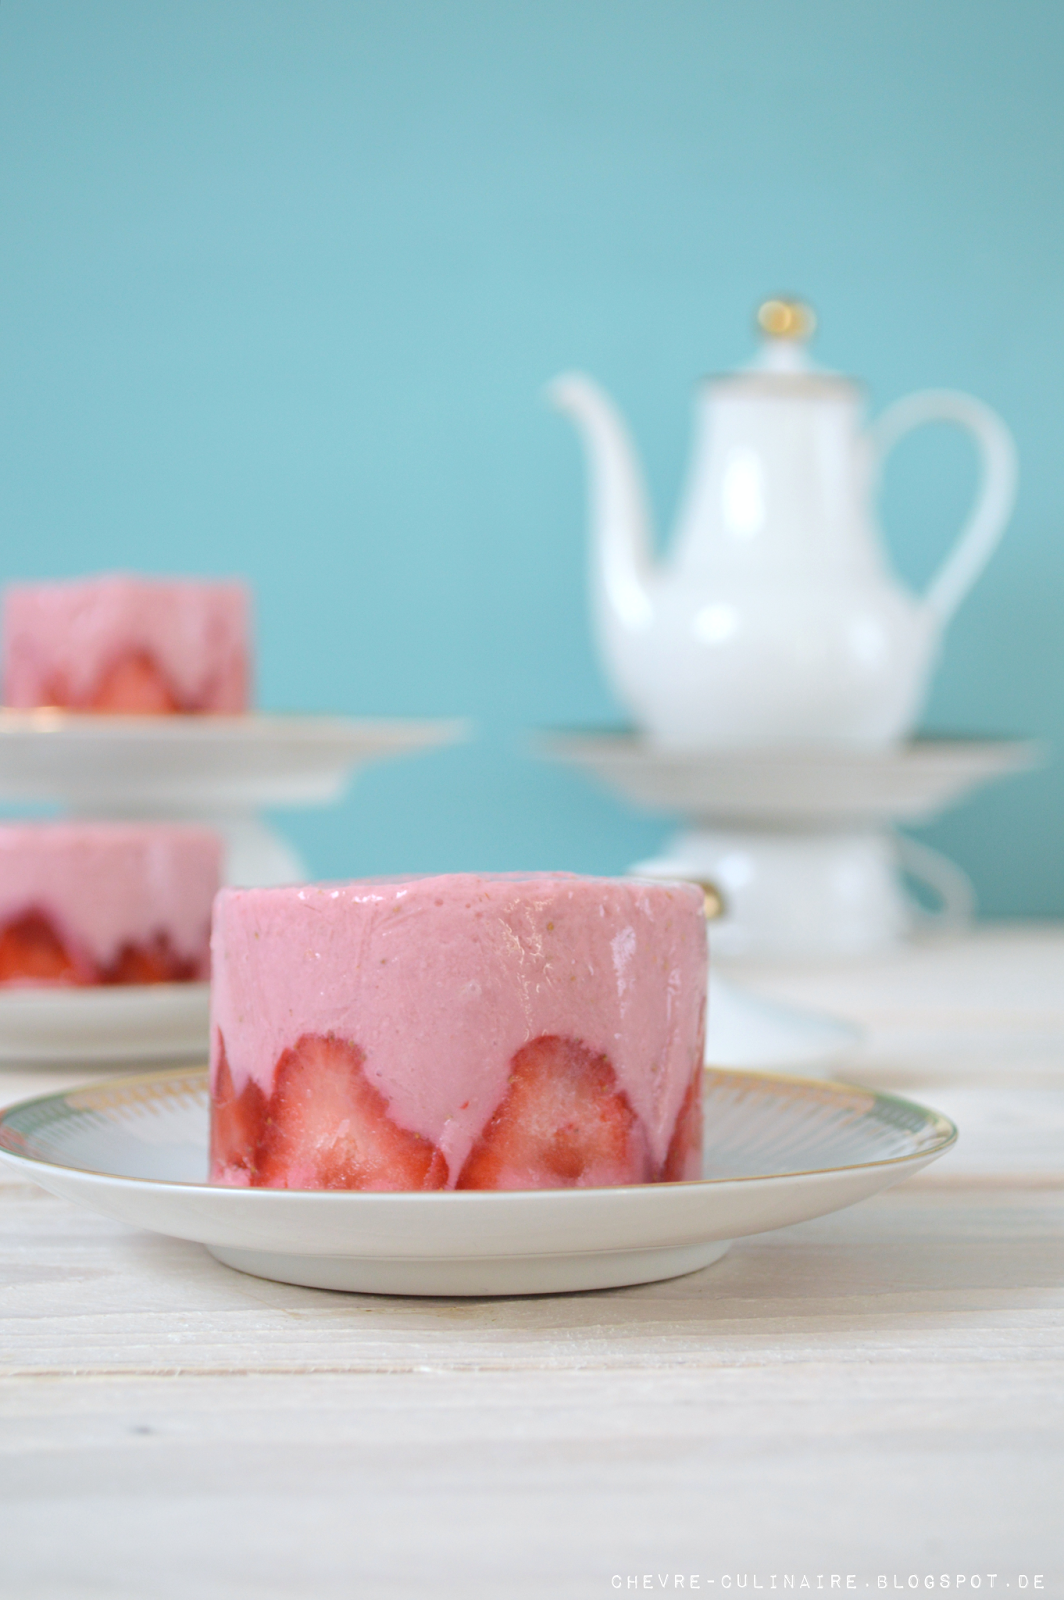 Chèvre Culinaire: Vegane Frozen Joghurt Törtchen mit Erdbeeren ...